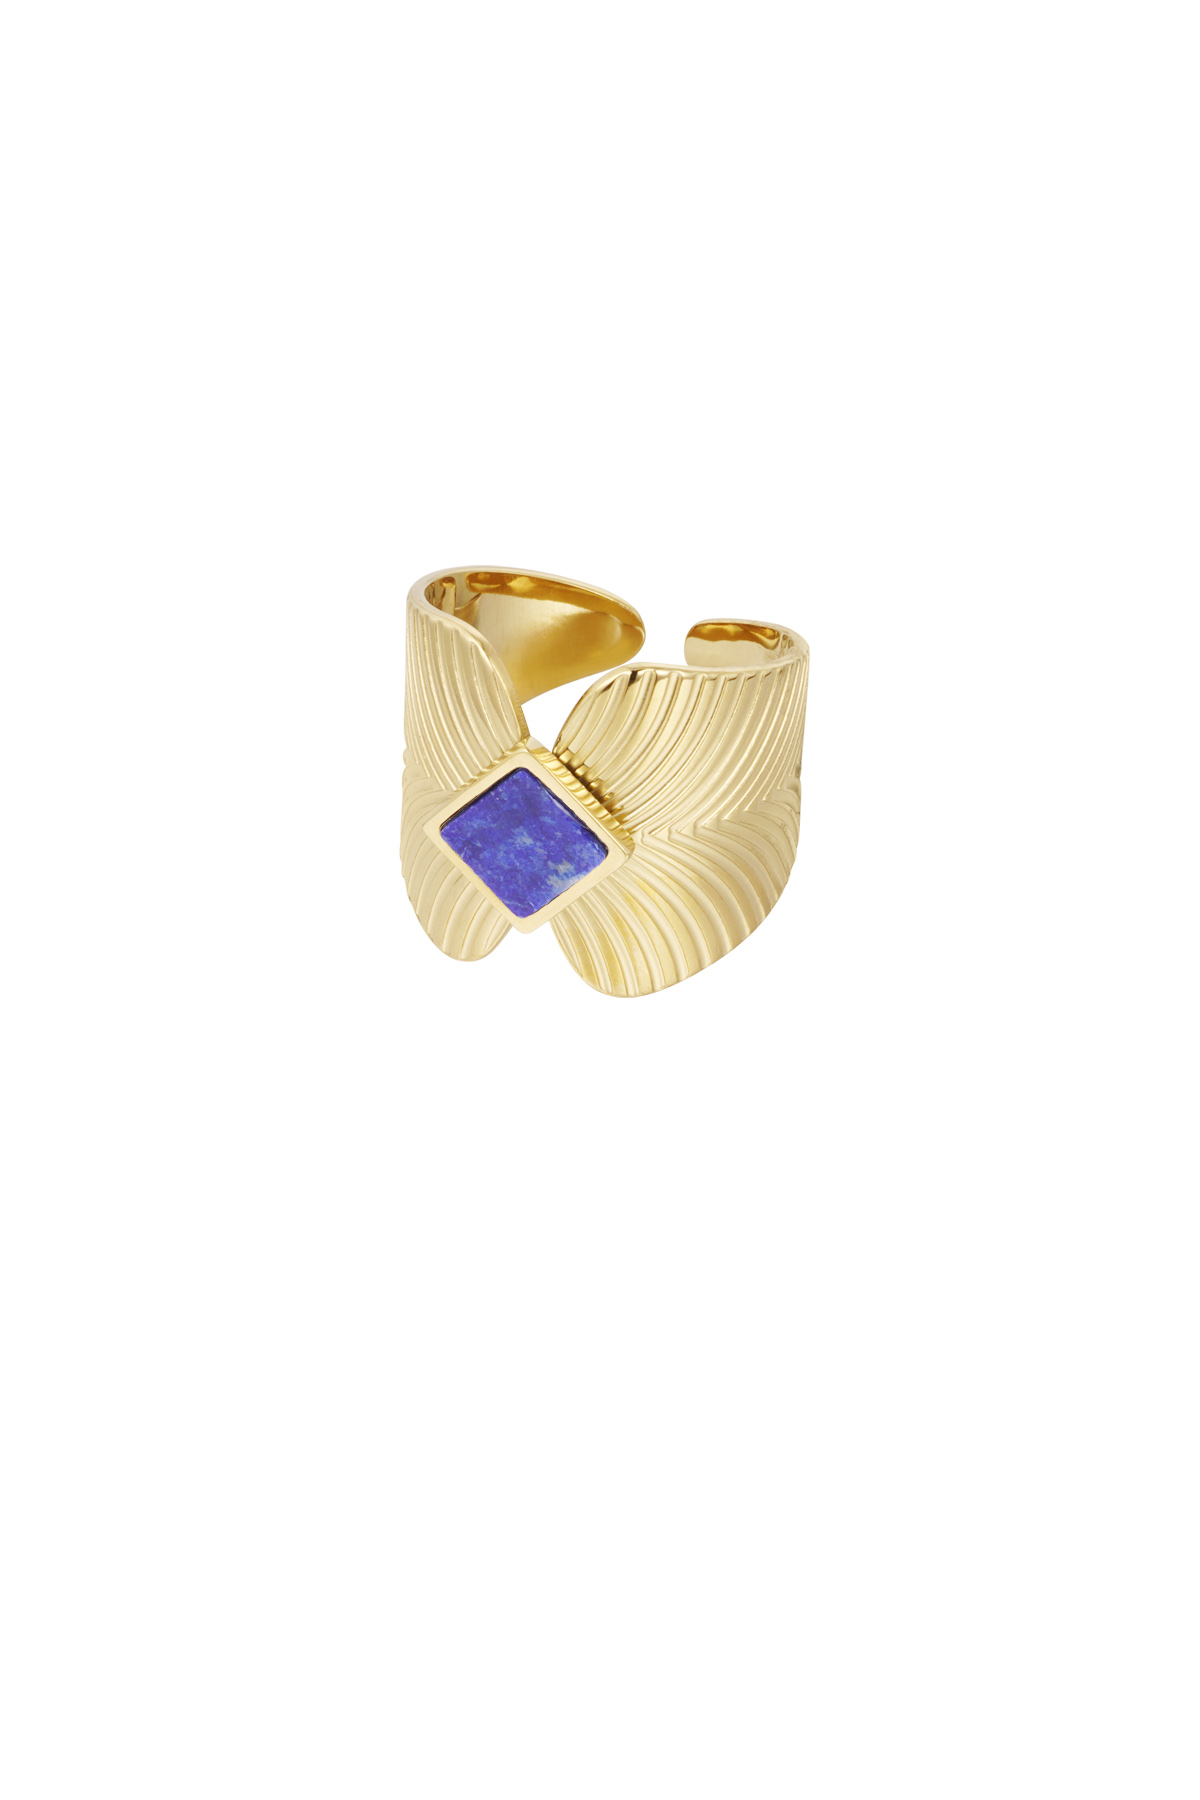 Ring blaadjes met ruit steen - goud/blauw